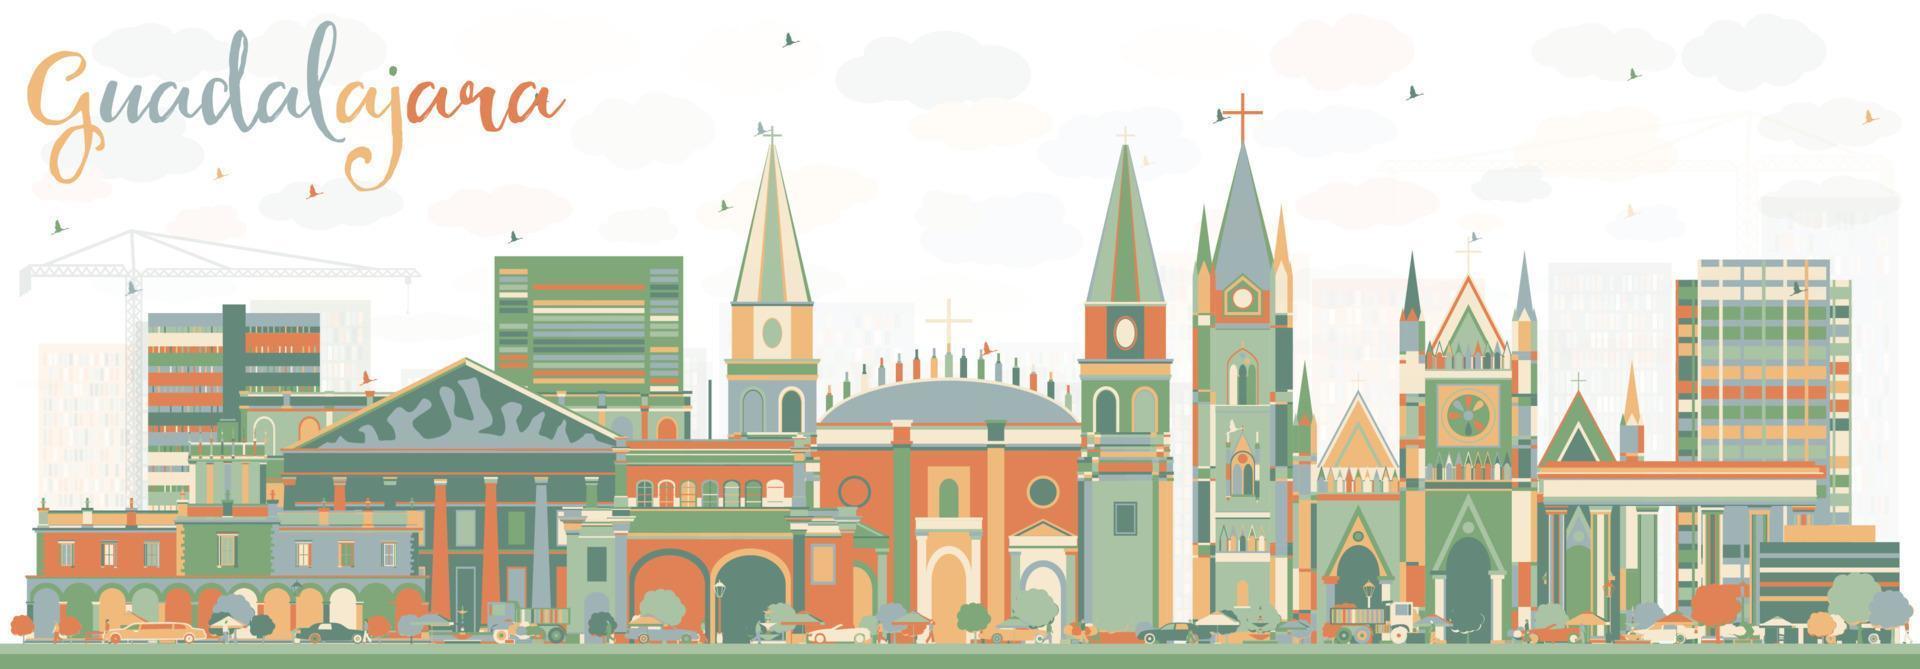 abstrakte Skyline von Guadalajara mit farbigen Gebäuden. vektor